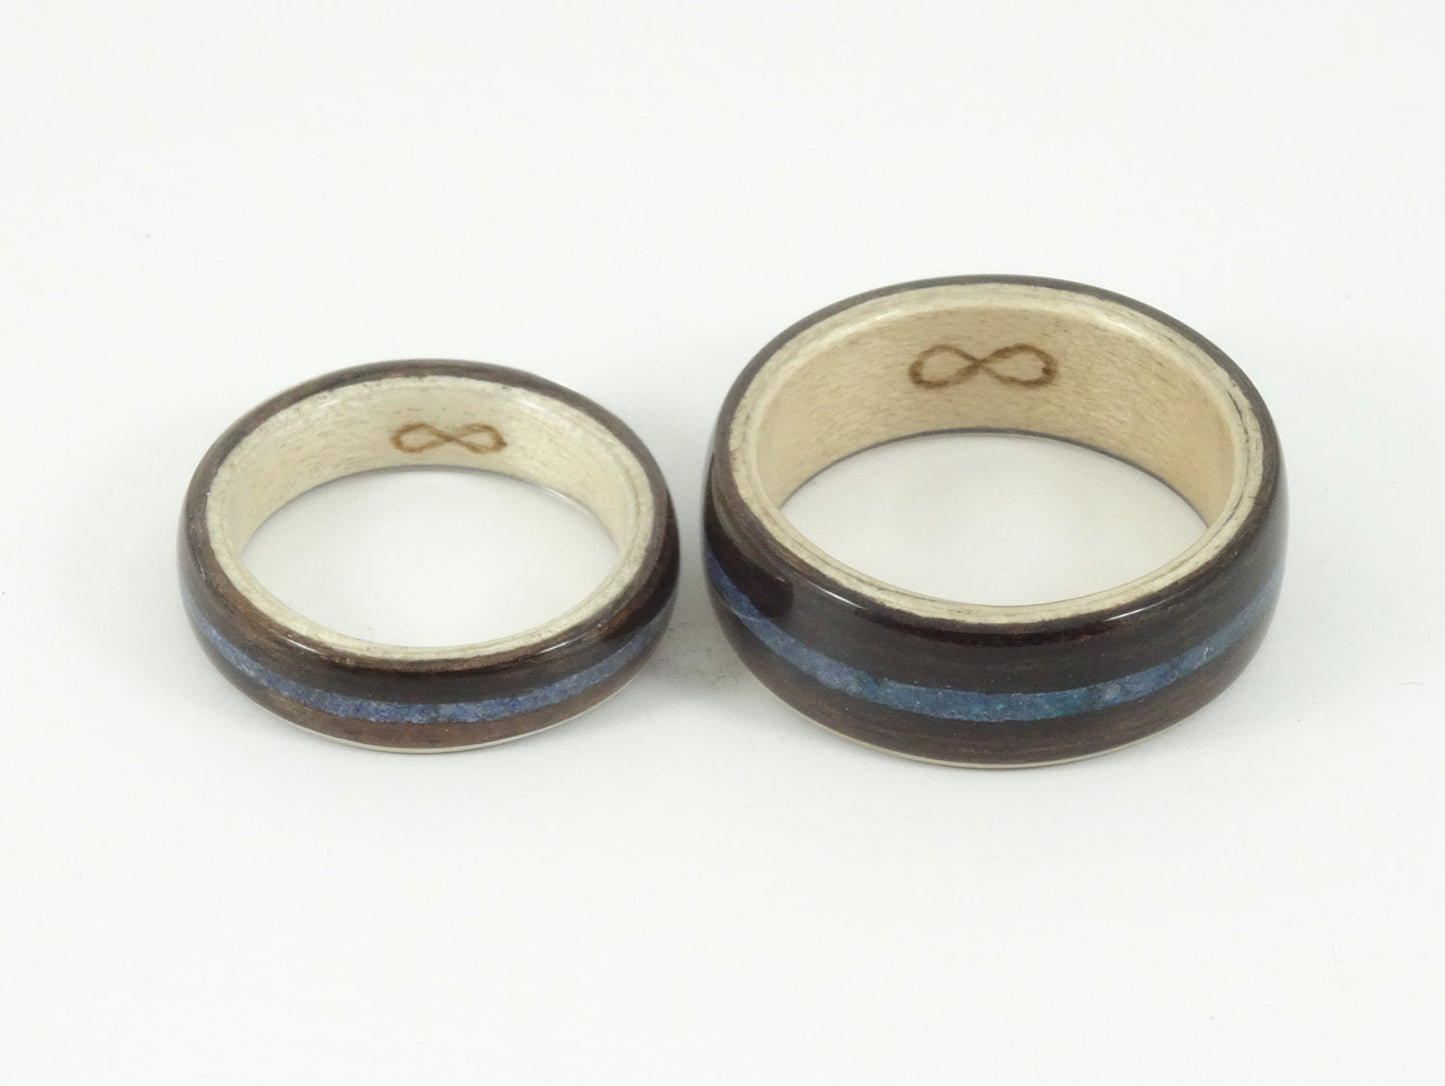 Ebony and Maple with Blue Lapiz Bent Wood Ring